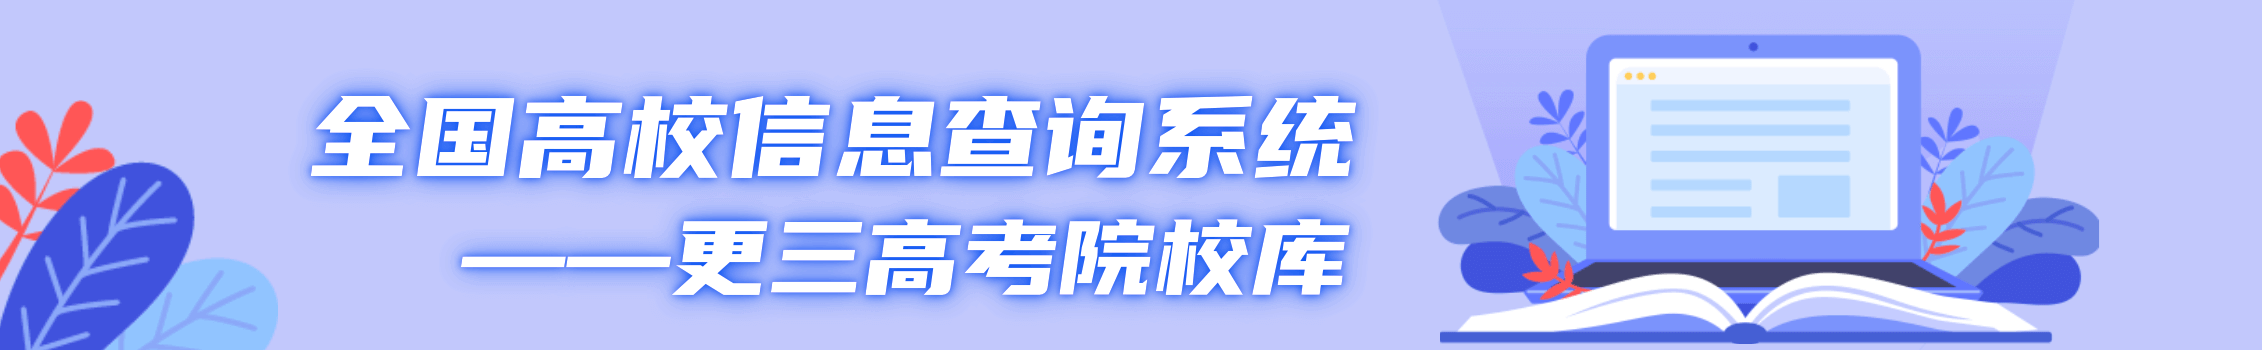 闽江学院数据科学与大数据技术专业在甘肃招